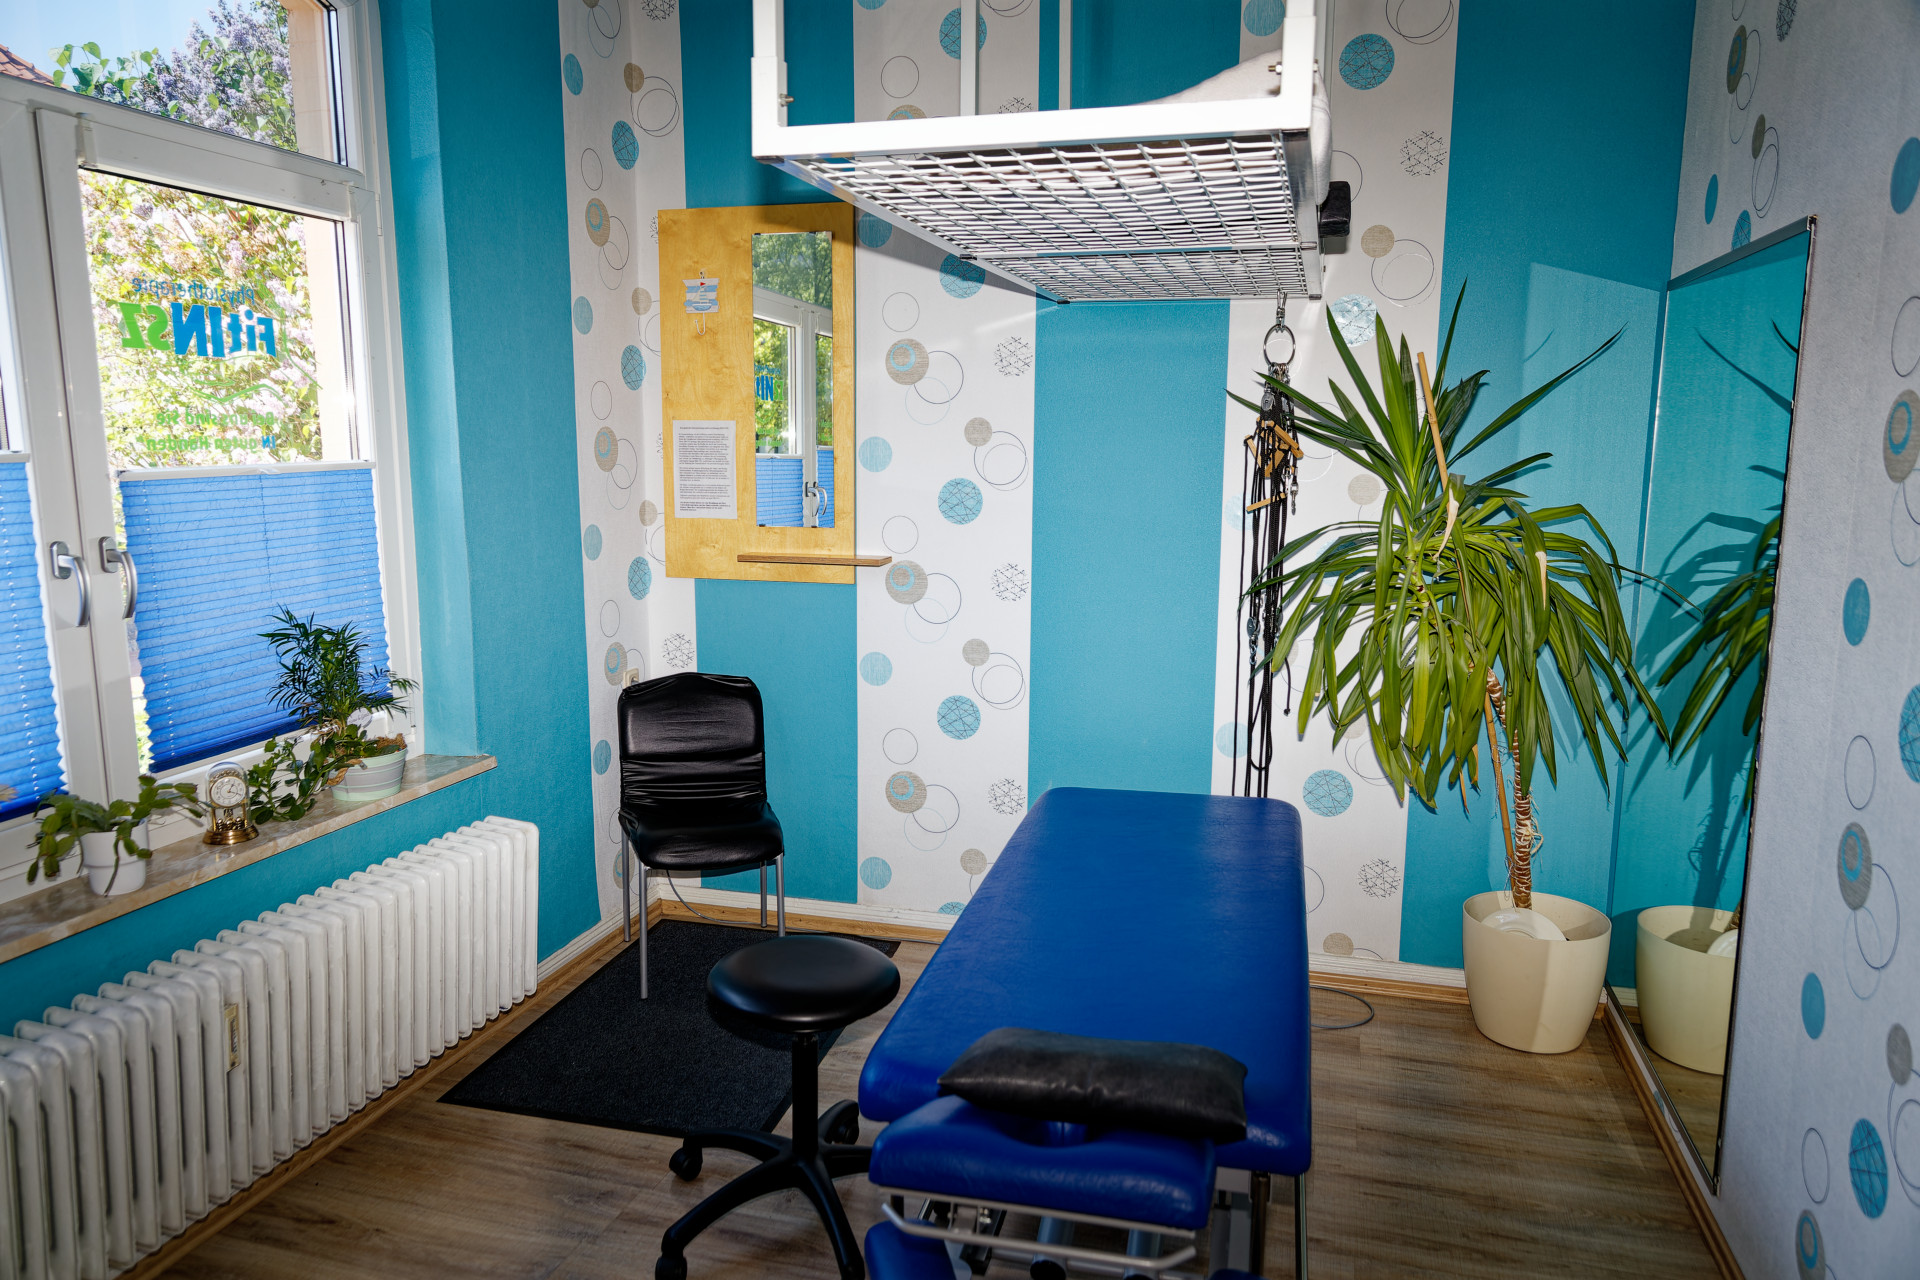 Behandlungsraum eins mit einer Behandlungsliege und dadrüber mit dem Gitter vm Schlingentisch, Ein Stuhl zum umziehen ist daneben sowie eine Pflanze